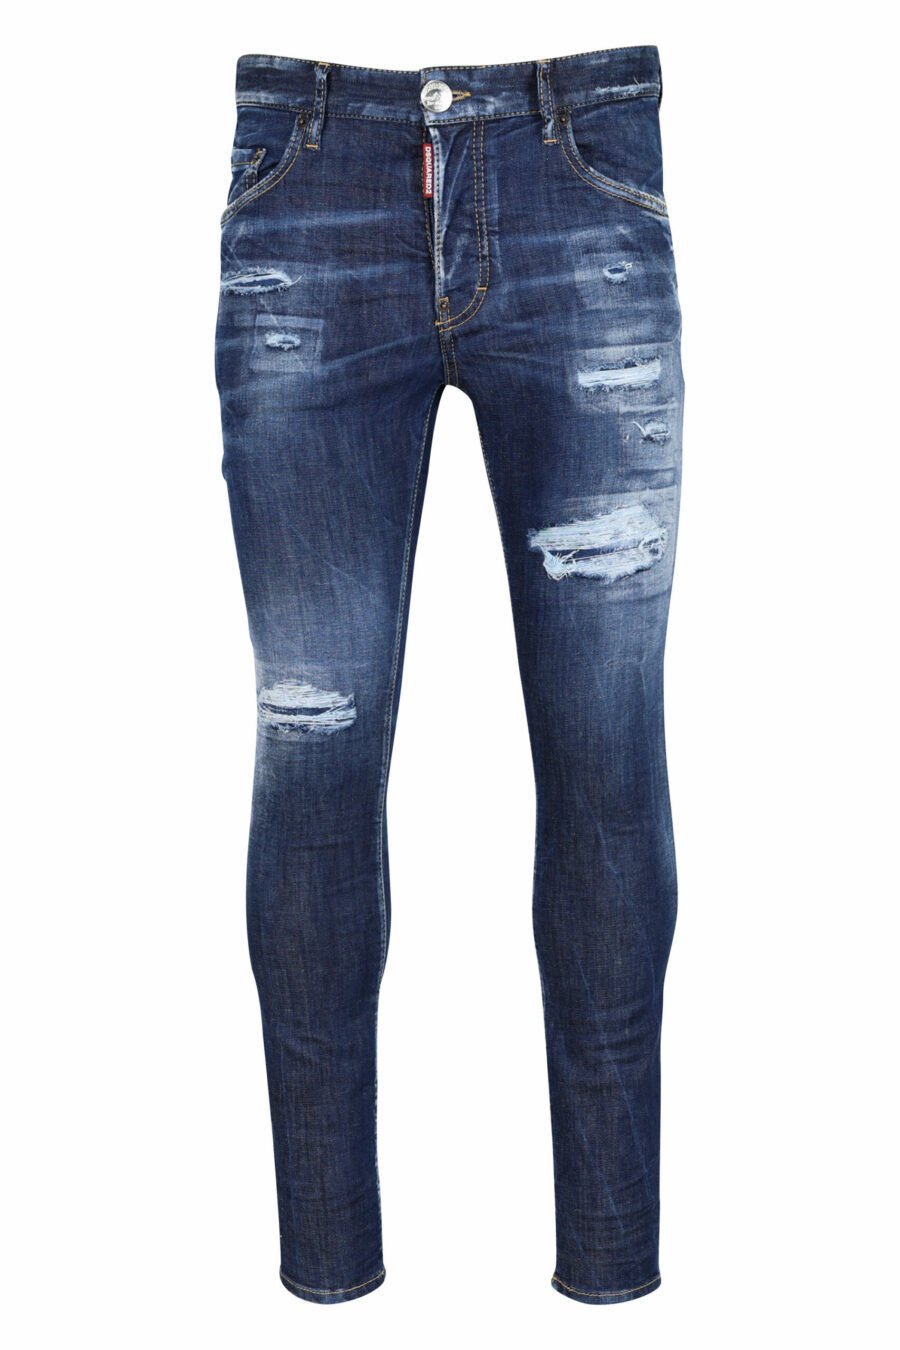 Pantalón vaquero "super twinky jean" azul con rotos y desgastado - 8054148106201 scaled